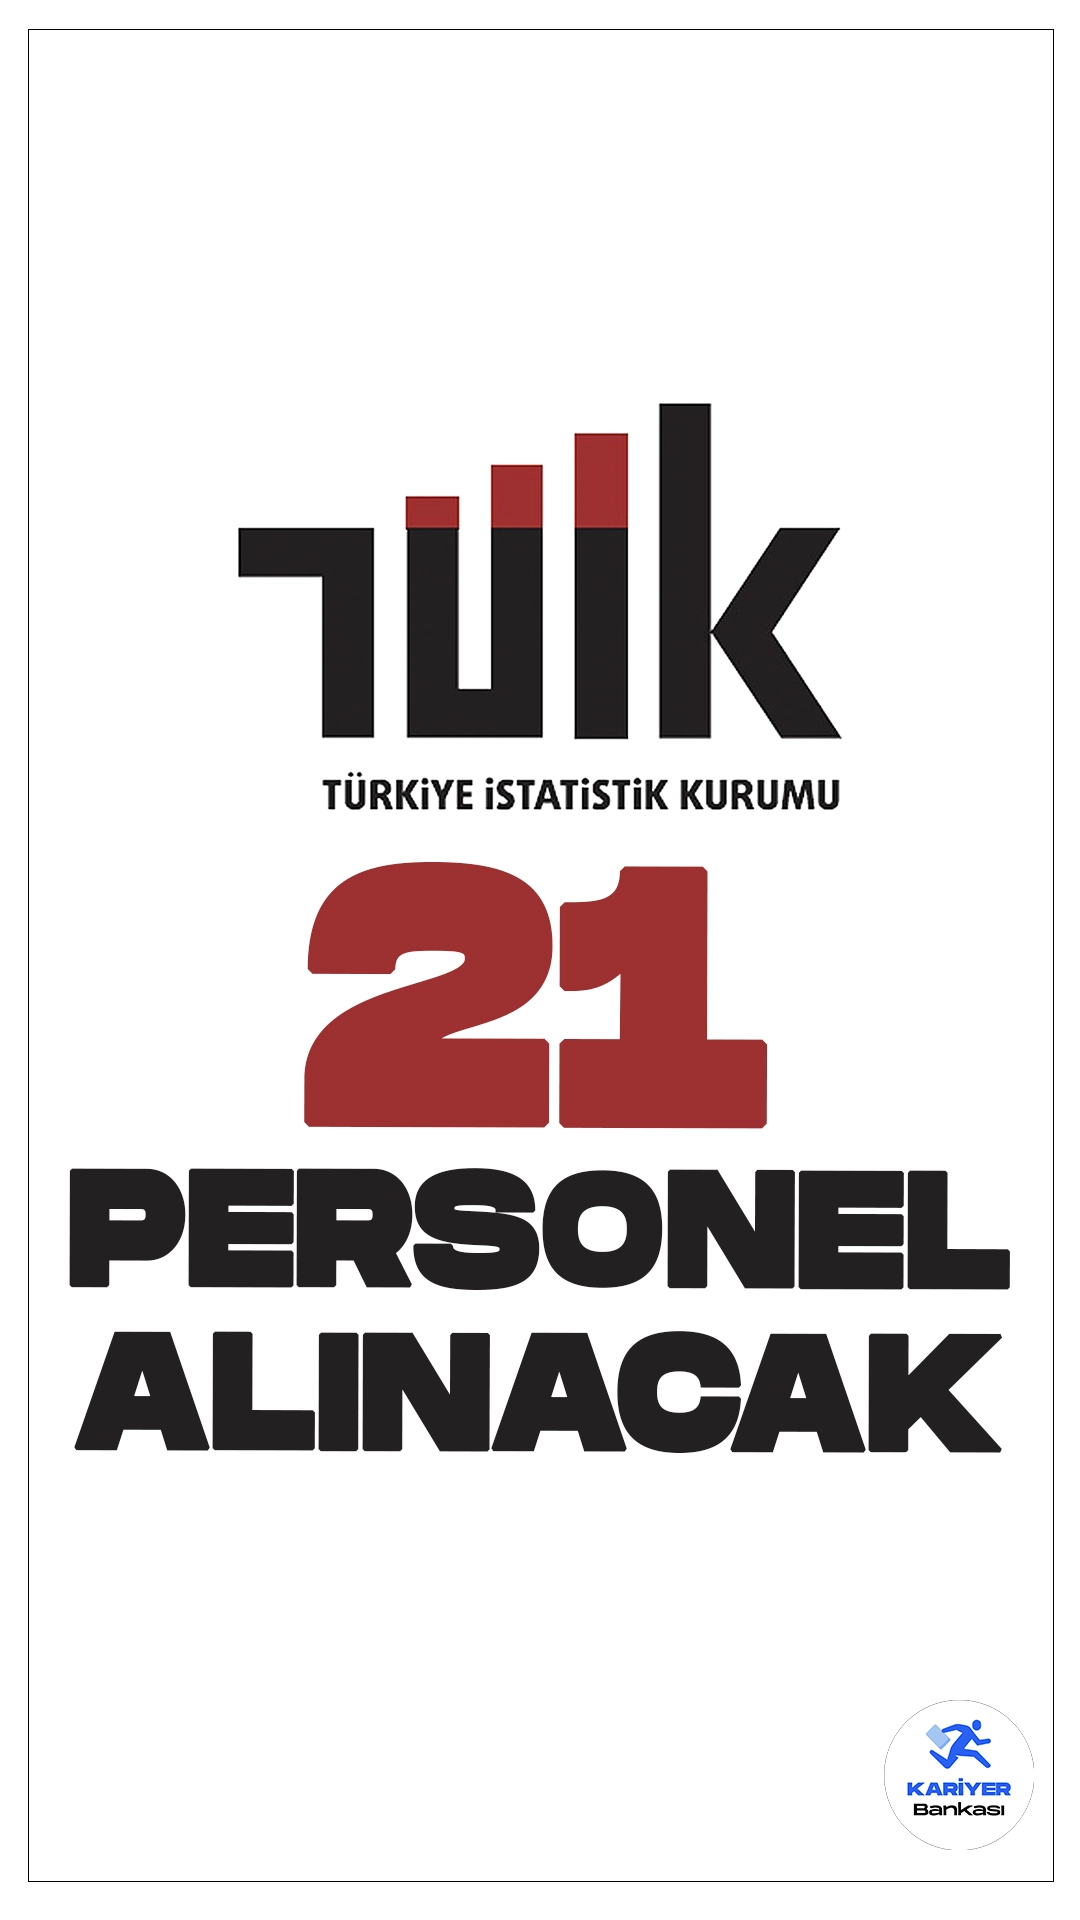 TÜİK 21 Personel Alımı Yapacak.Türkiye İstatistik Kurumu (TÜİK), Yazılım Daire Başkanlığı, Ağ ve Sistem Yönetimi Daire Başkanlığı ve Veri Yönetişimi Daire Başkanlığı bünyesinde tam zamanlı çalışacak 21 Sözleşmeli Bilişim Personeli alımı yapacak. Alımlar, 375 sayılı Kanun Hükmünde Kararname'nin Ek 6. maddesi ve 31 Aralık 2008 tarihli Resmi Gazete’de yayımlanan yönetmelik doğrultusunda gerçekleştirilecek. İşte şartlar ve başvuru bilgileri..